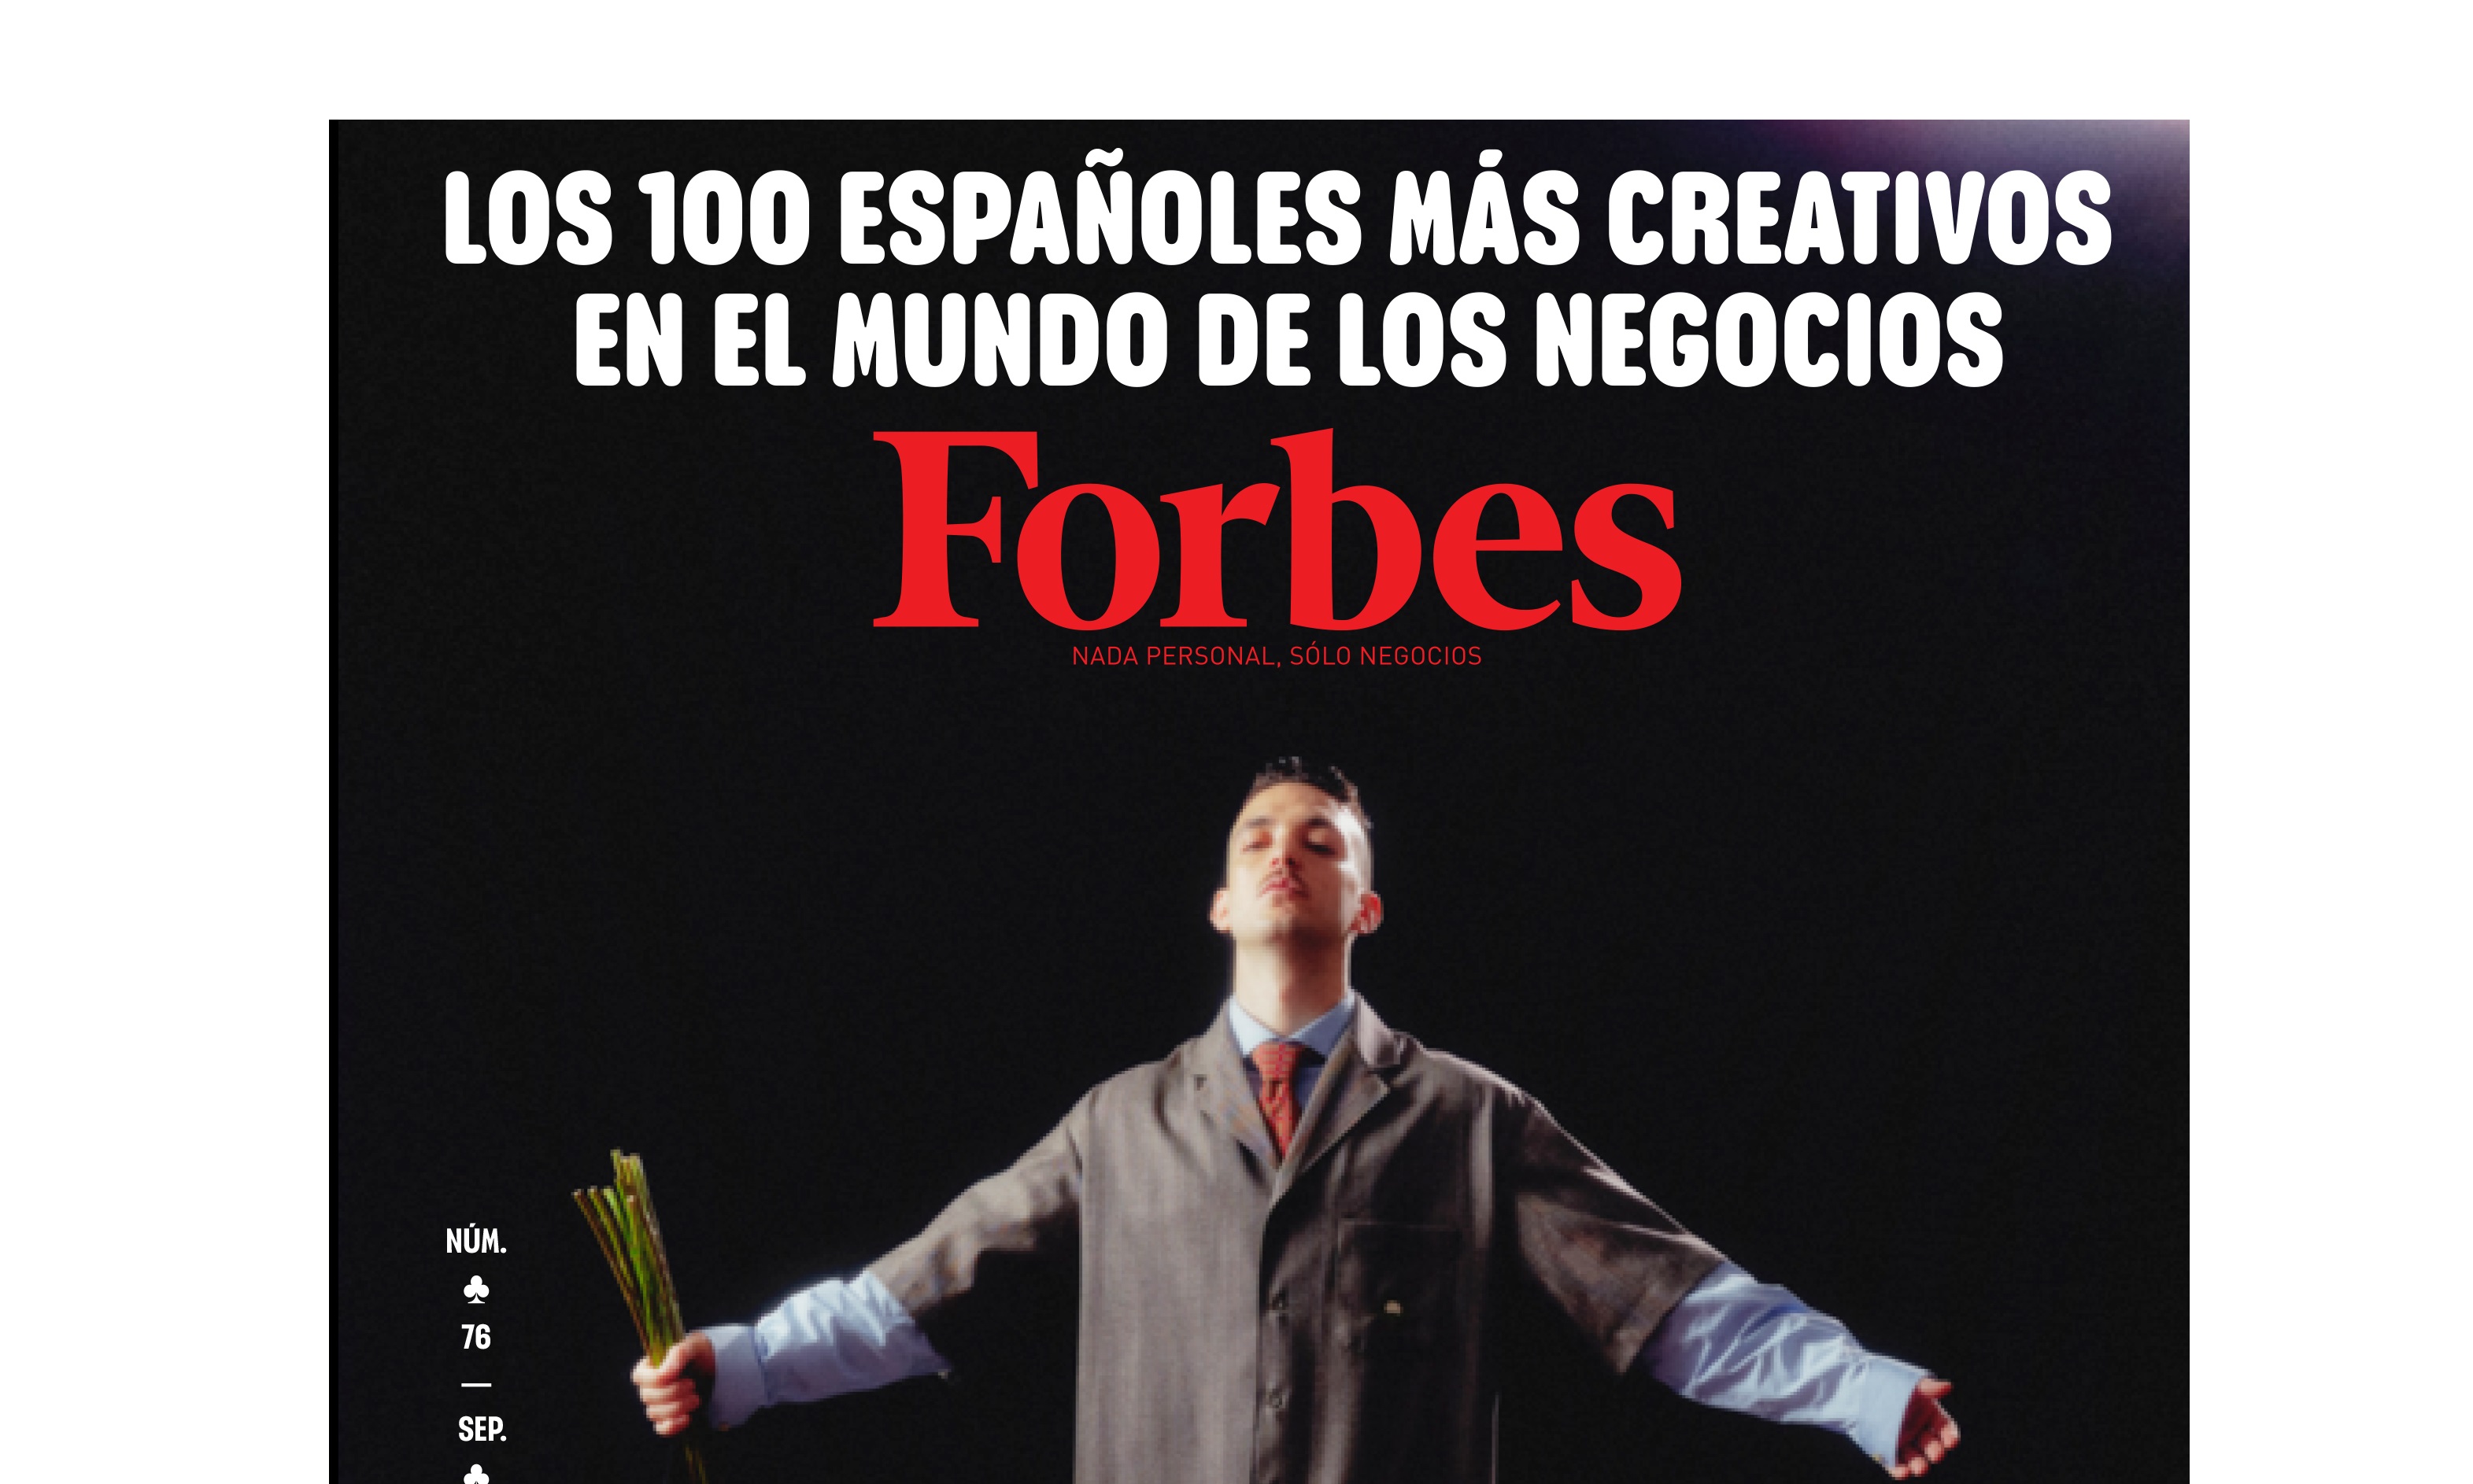 forbes, 100 españoles, más creativos, programapublicidad